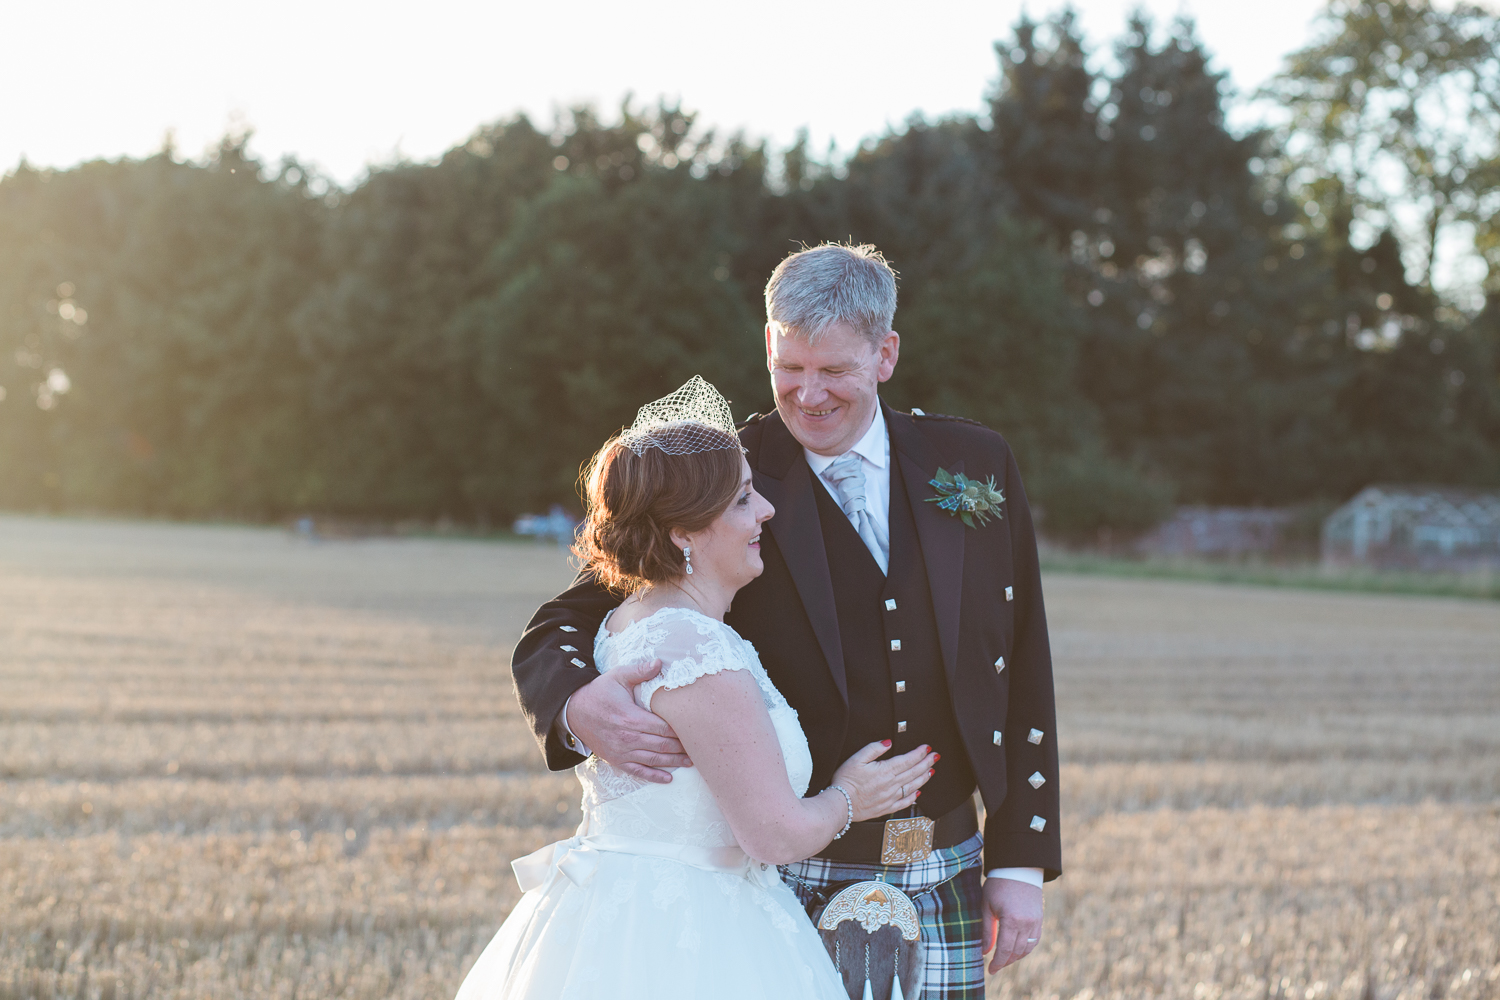 Aberdeen wedding photographer, Aberdeen wedding photographers, wedding photography Aberdeen